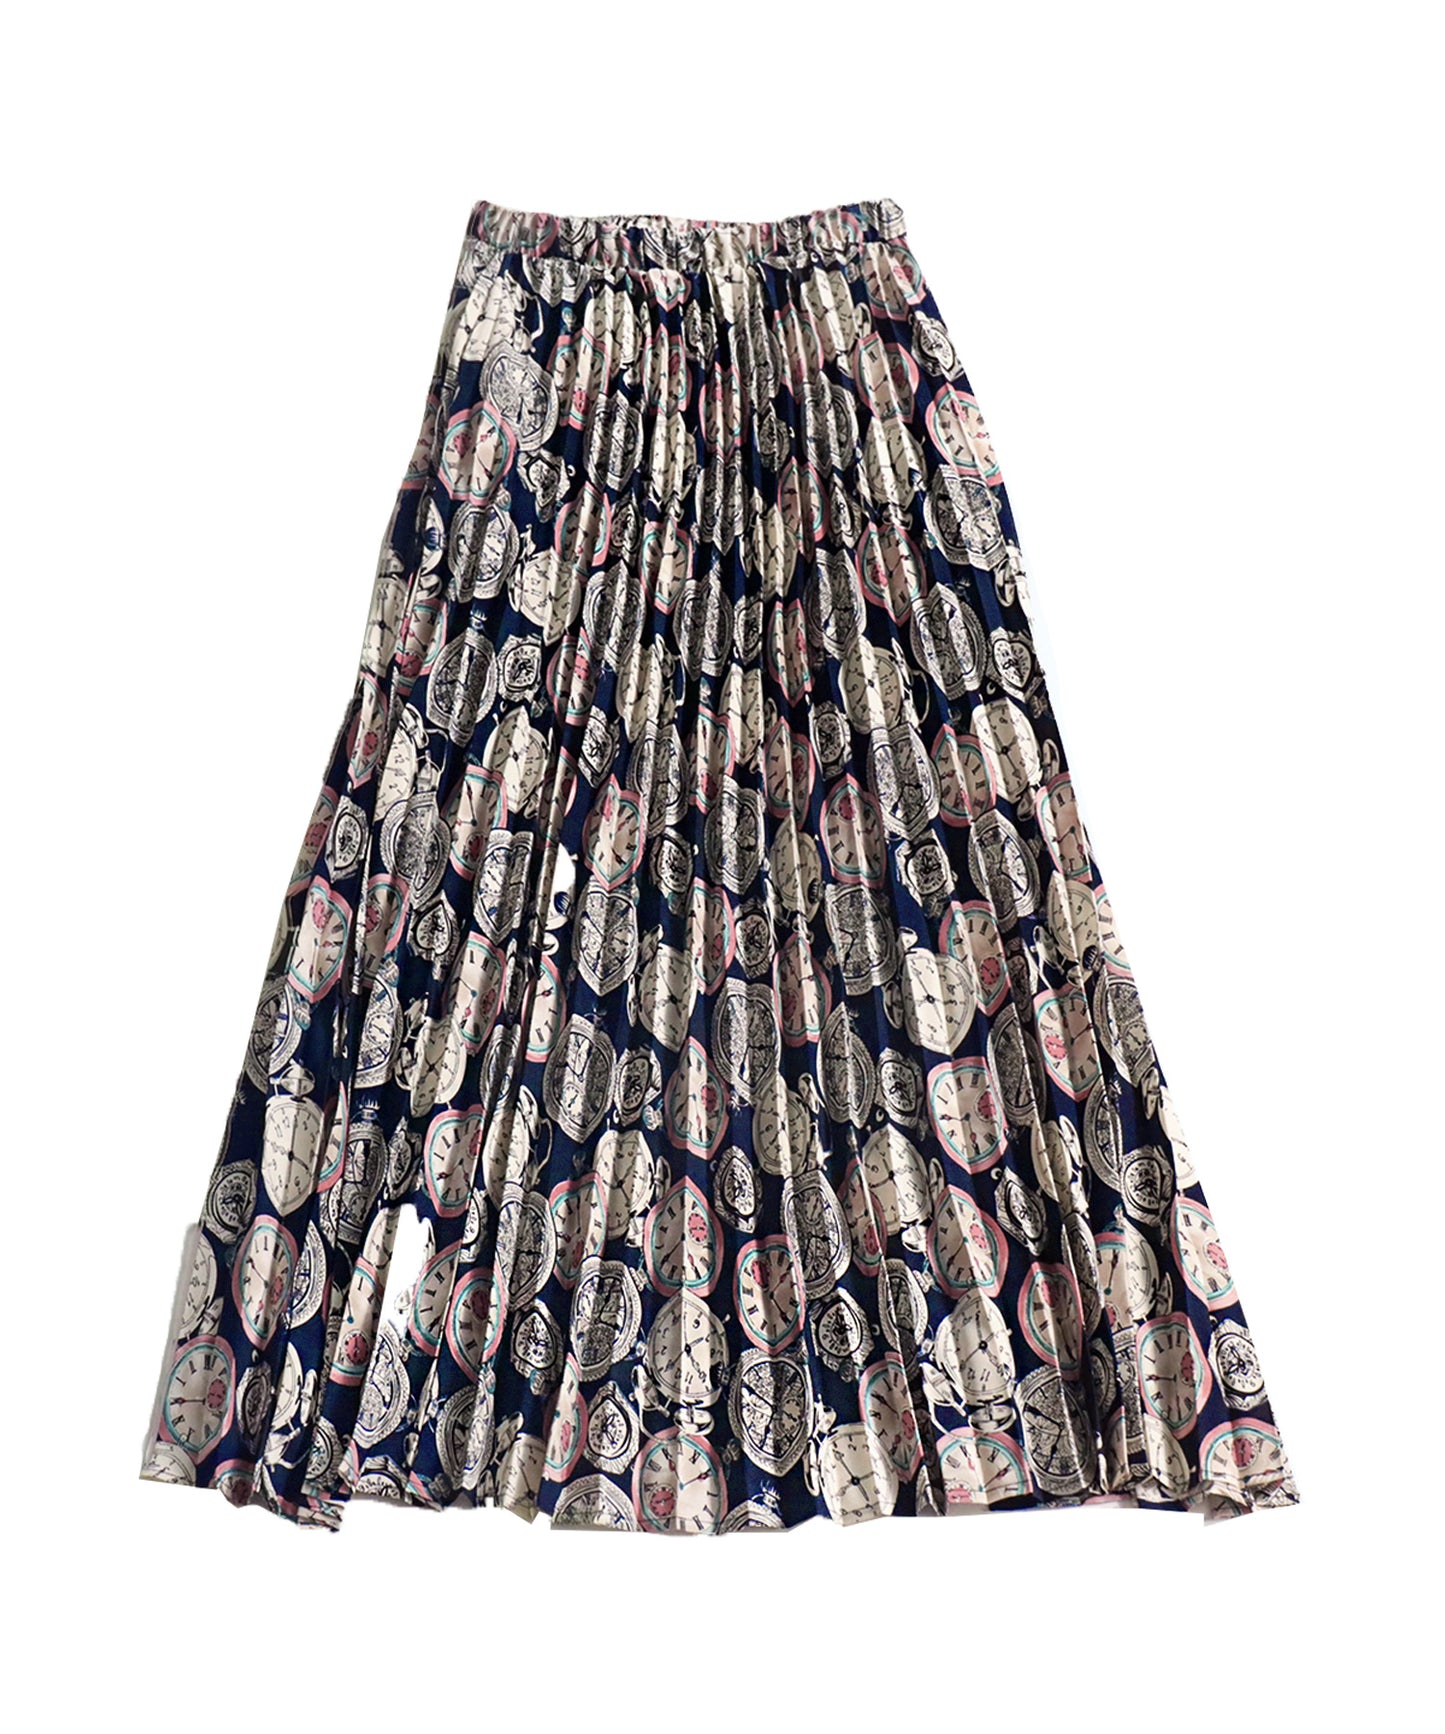 Pleated Ladies skirt Patterned skirt